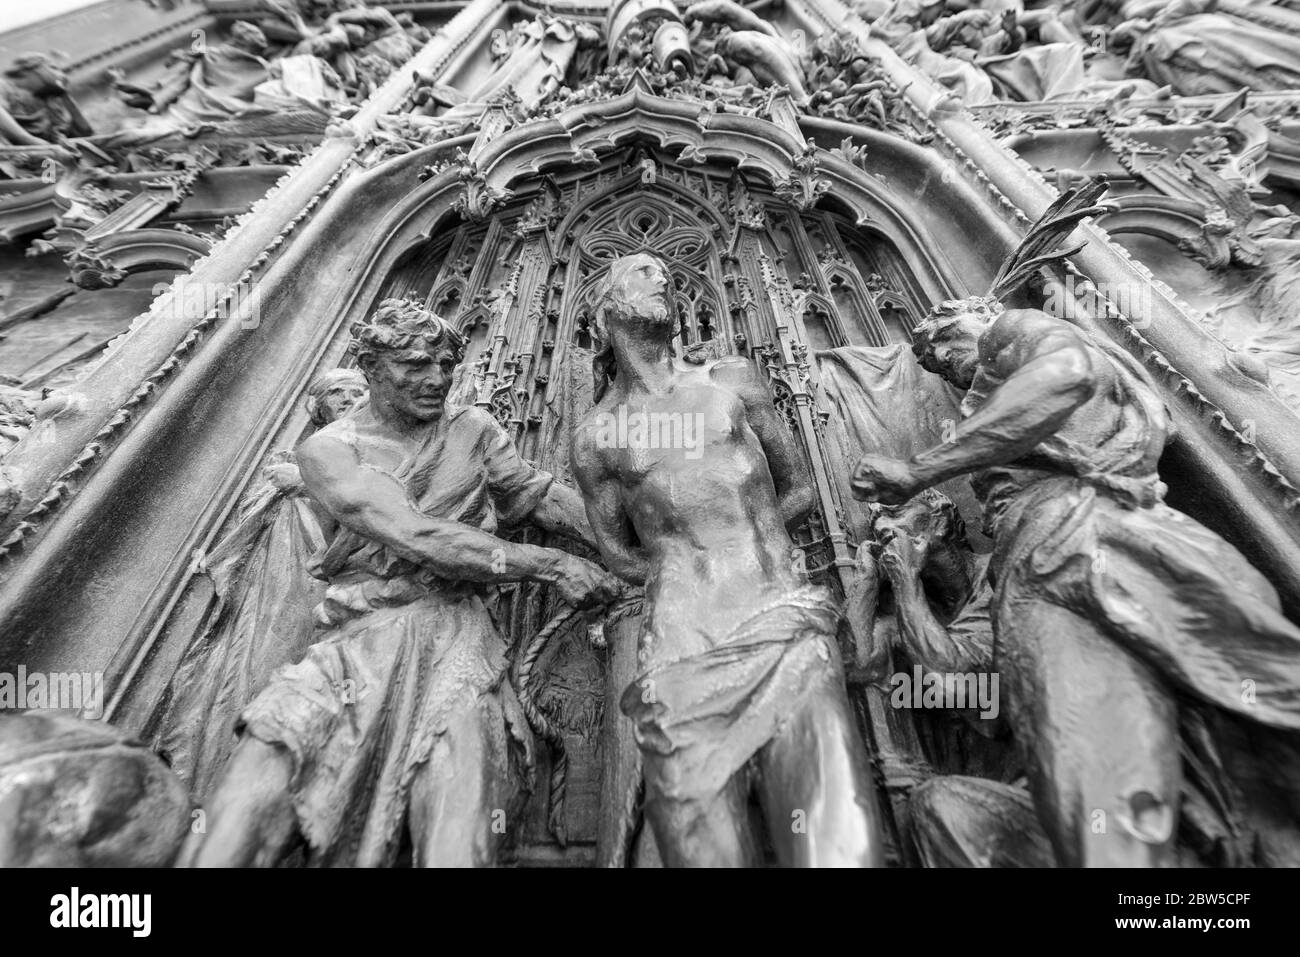 MILÁN, ITALIA - 16, MARZO de 2018: Imagen en blanco y negro de obras de arte públicas en las paredes del Duomo di Milano, un recorrido turístico de Milán, Italia Foto de stock